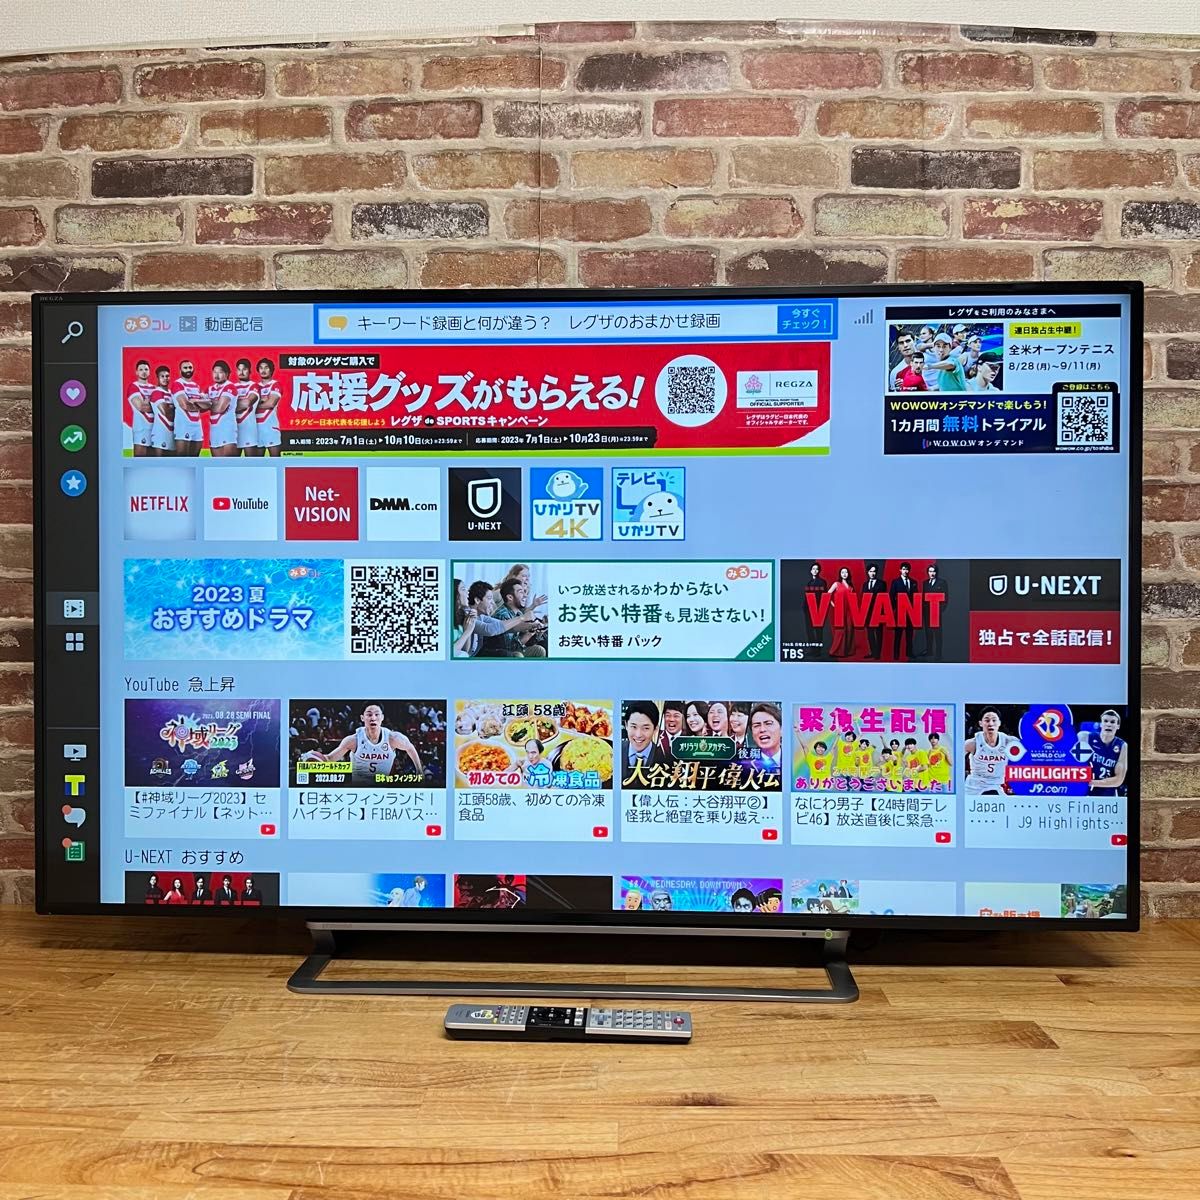 東芝 49インチ 4K 液晶テレビ REGZA 49G20X HDD 2番組同時録画対応